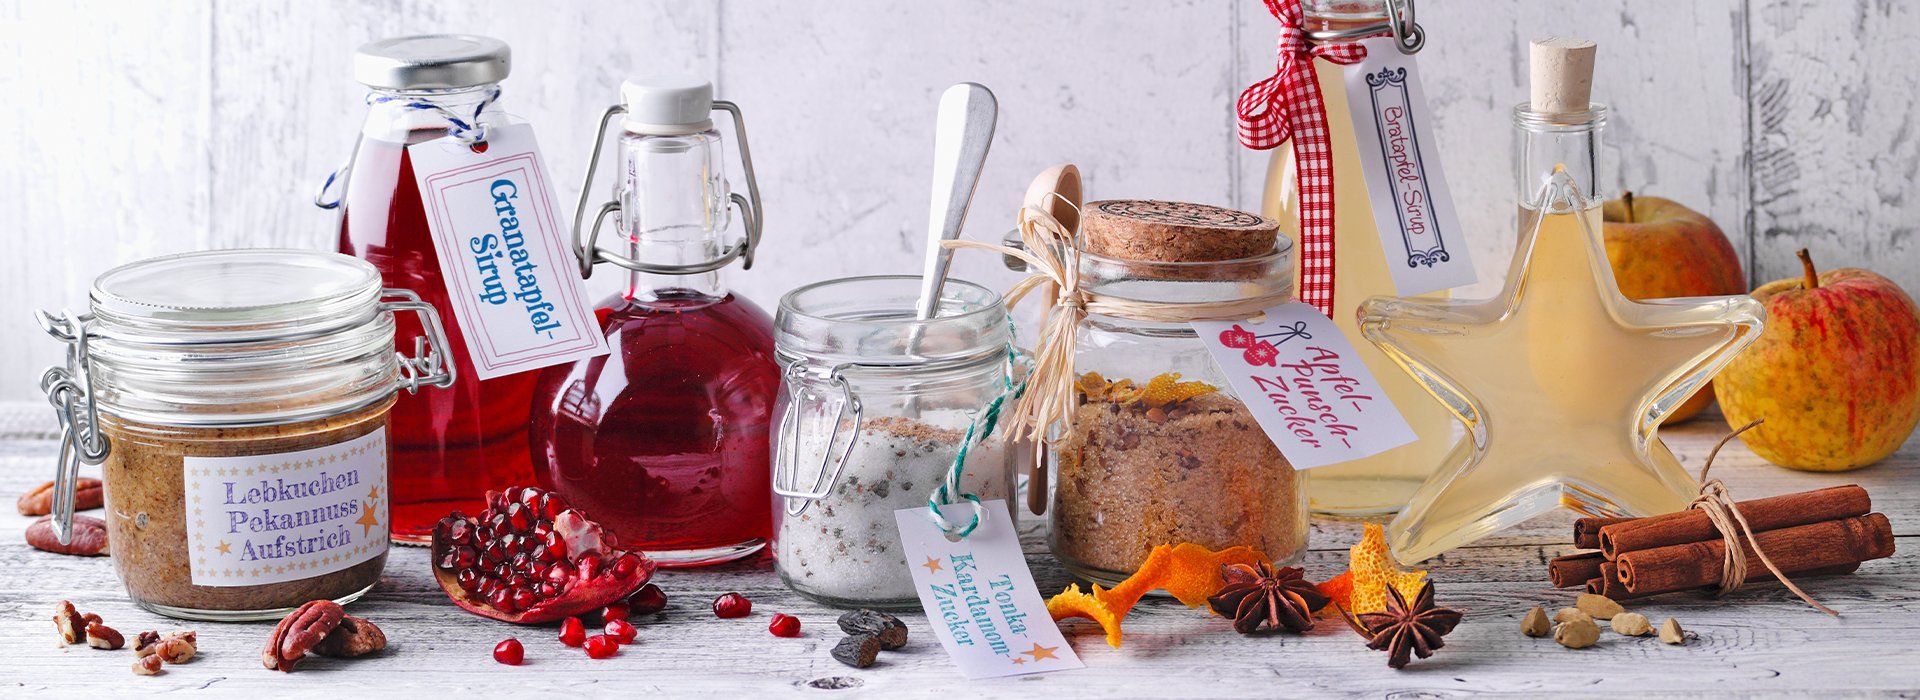 Eine Auswahl an Marmeladen und Sirupen gemacht nach Rezepten von Sweet Family Etiketten gestalten